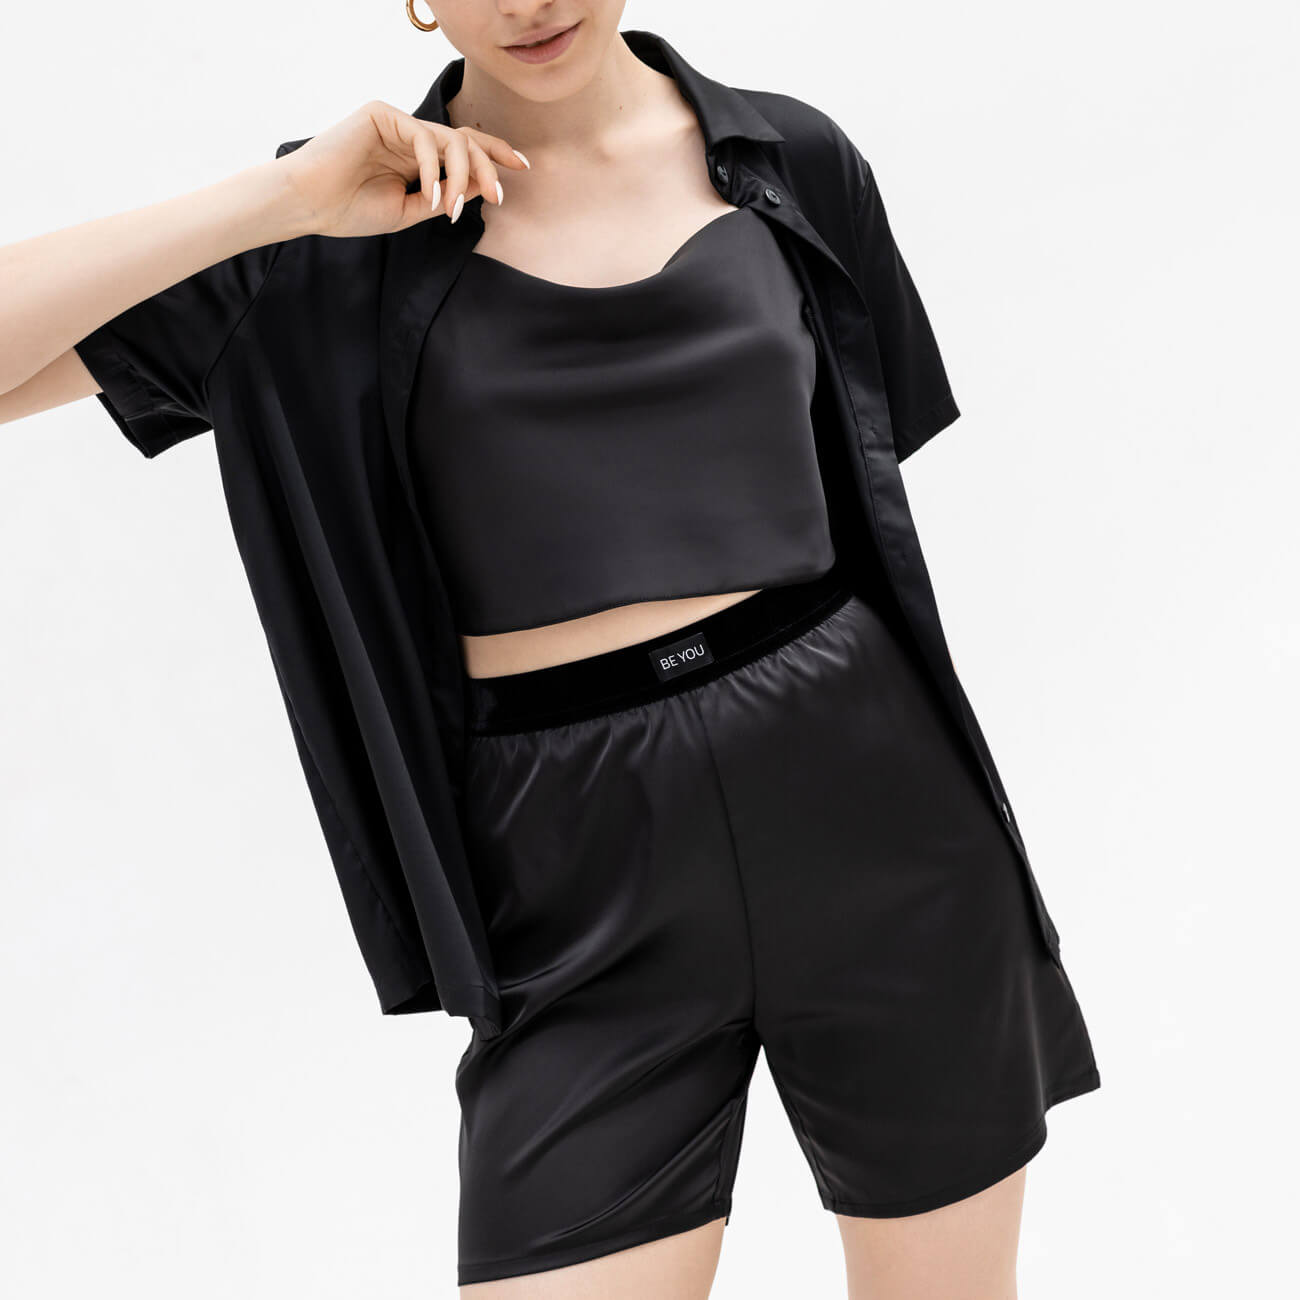 Шорты женские, р. XL, полиэстер/эластан, черные, Madeline короткие прямые женские шорты прямого кроя vero moda